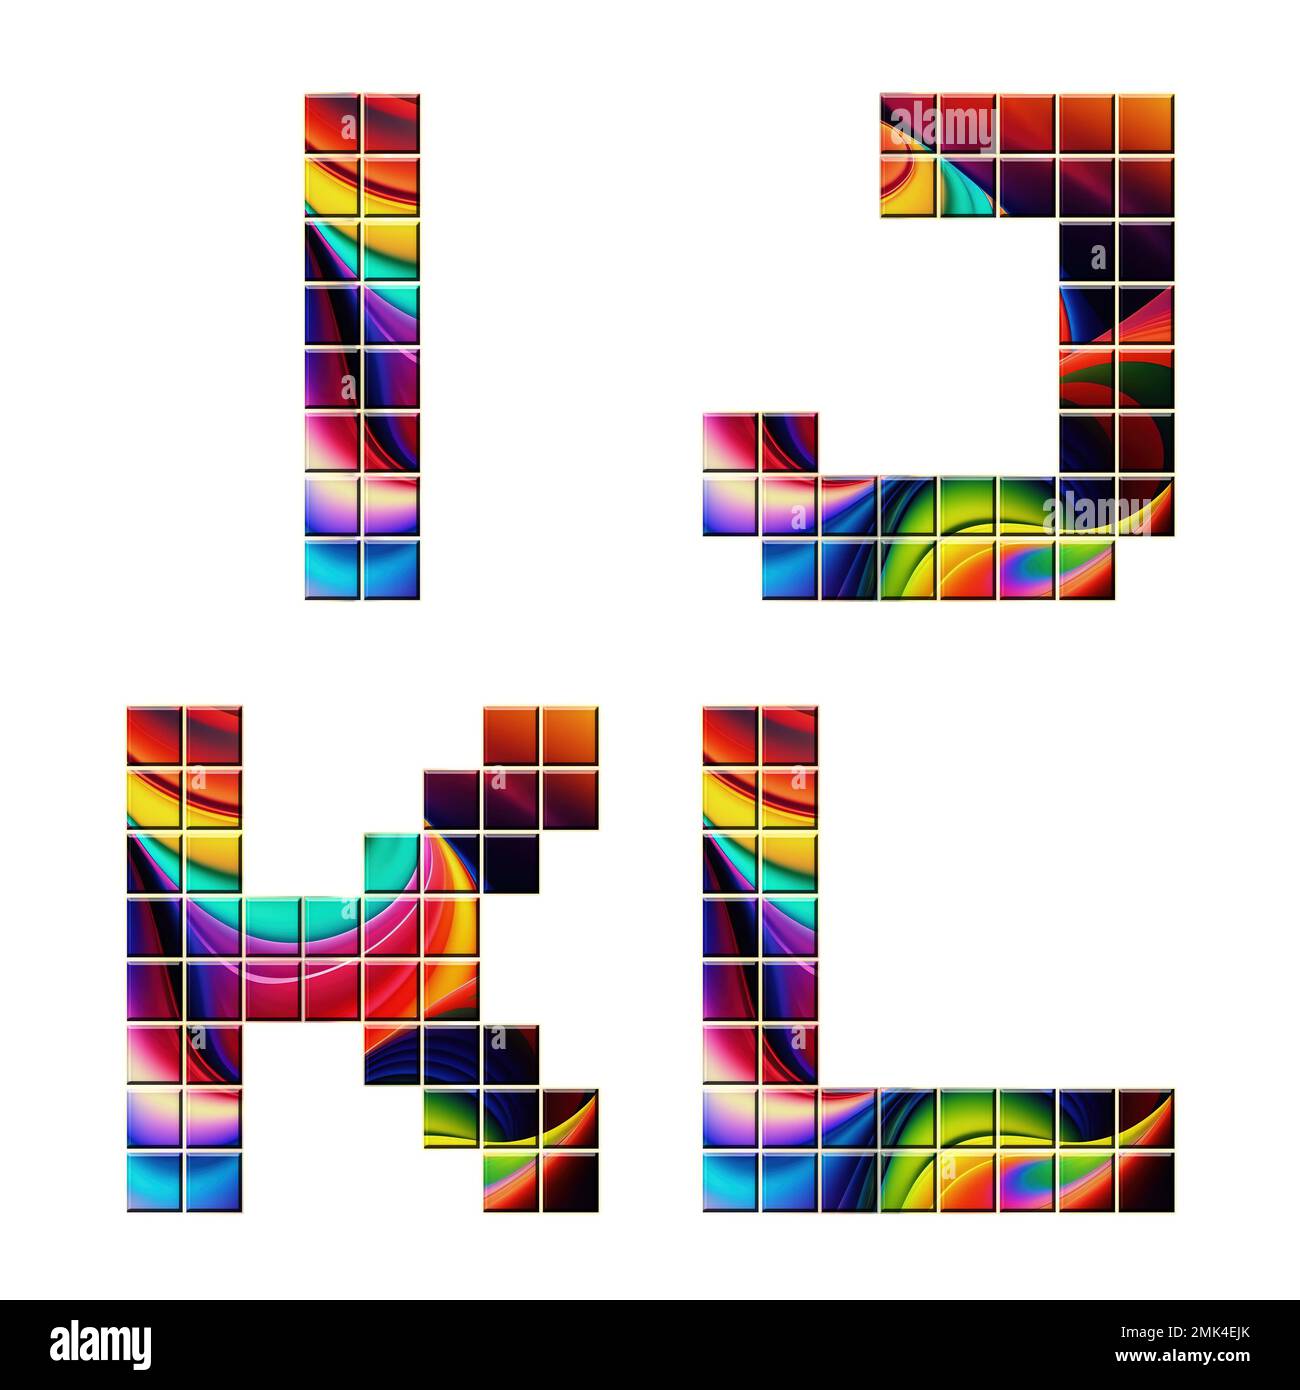 3D rendering di caratteri alfabetici a mosaico colorati - lettere i-L. Foto Stock